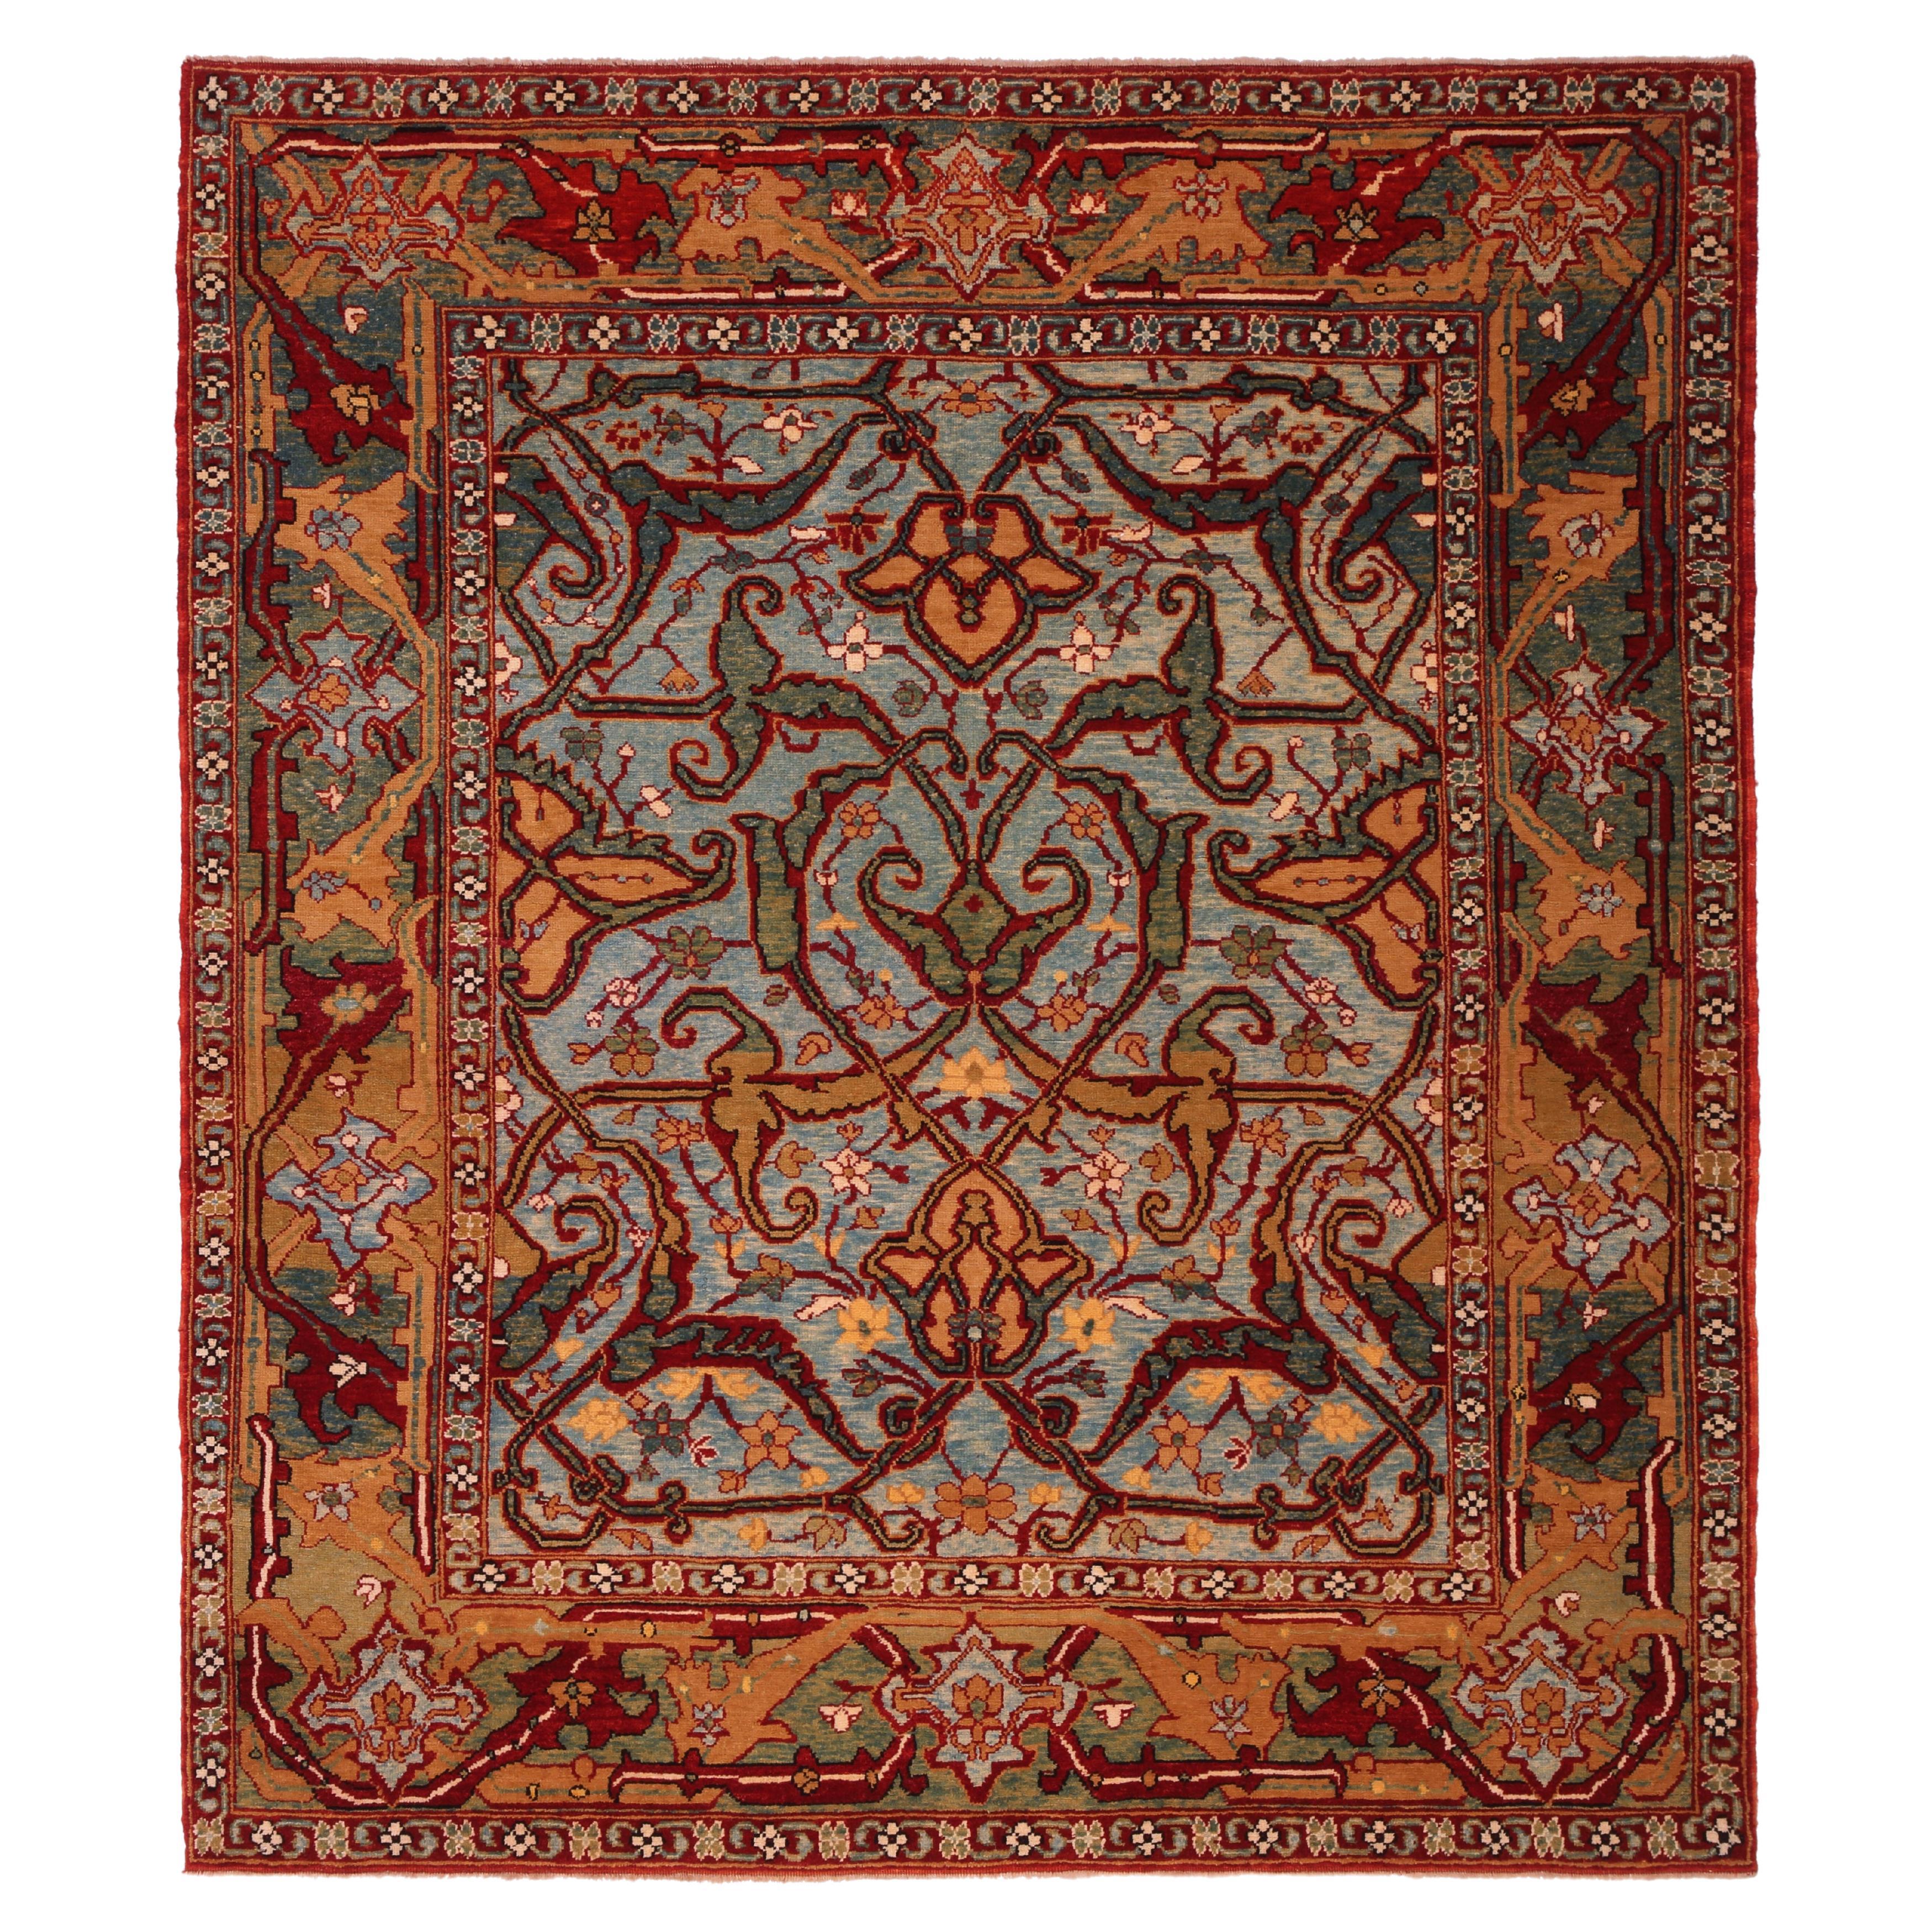 Ararat-Teppich Arabischer Teppich im Stil Persischer Kurdischer Wiedergeburt des 19. Jahrhunderts